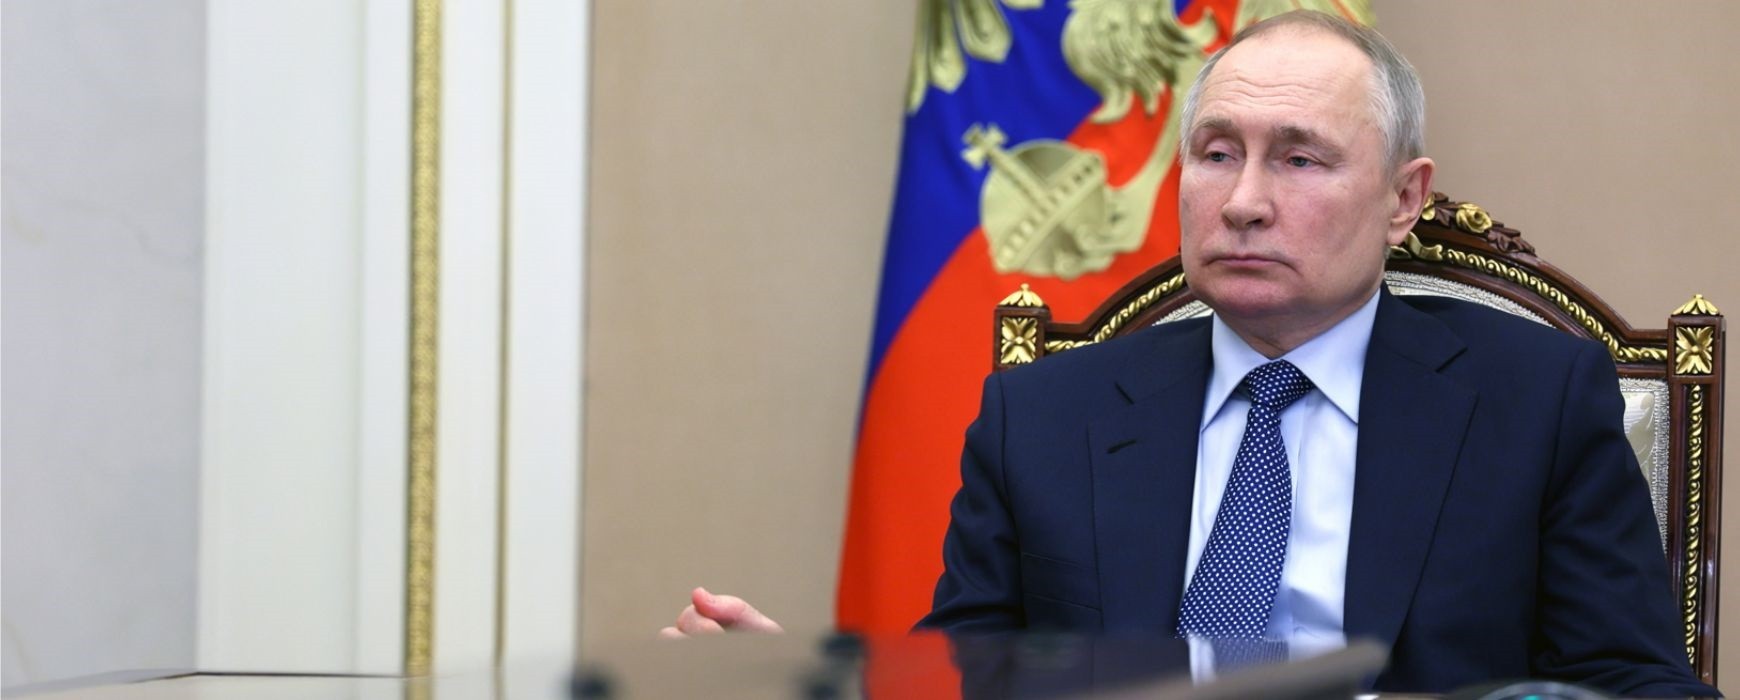 Βλαντίμιρ Πούτιν: Υπέγραψε νόμο που θεσπίζει την ηλεκτρονική επιστράτευση – Ανησυχία στη Ρωσία